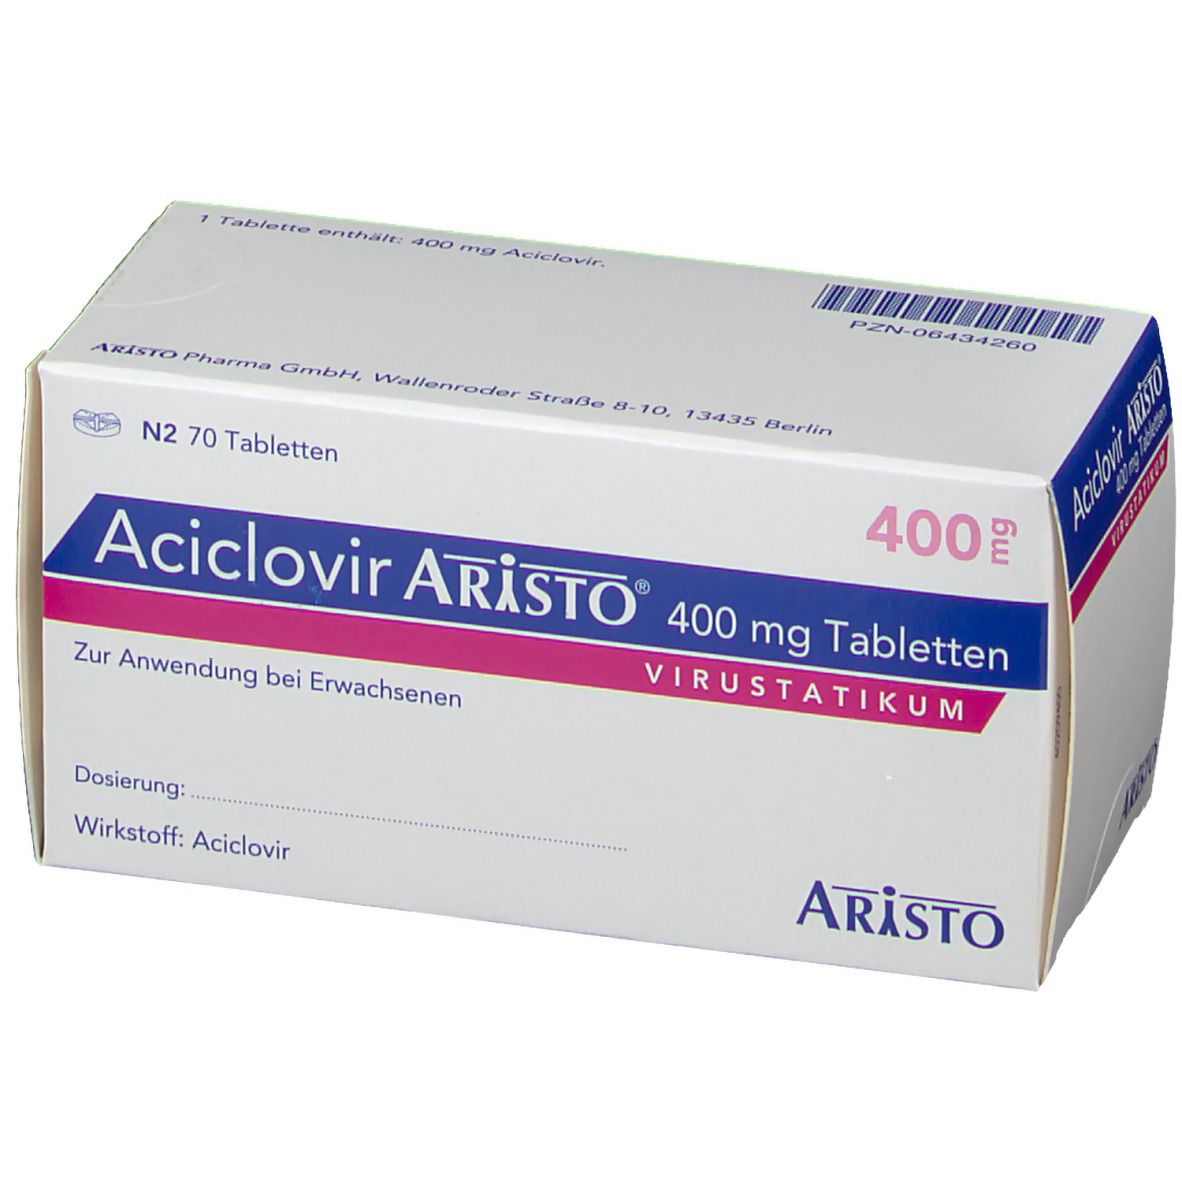 Aciclovir Aristo® 400 mg